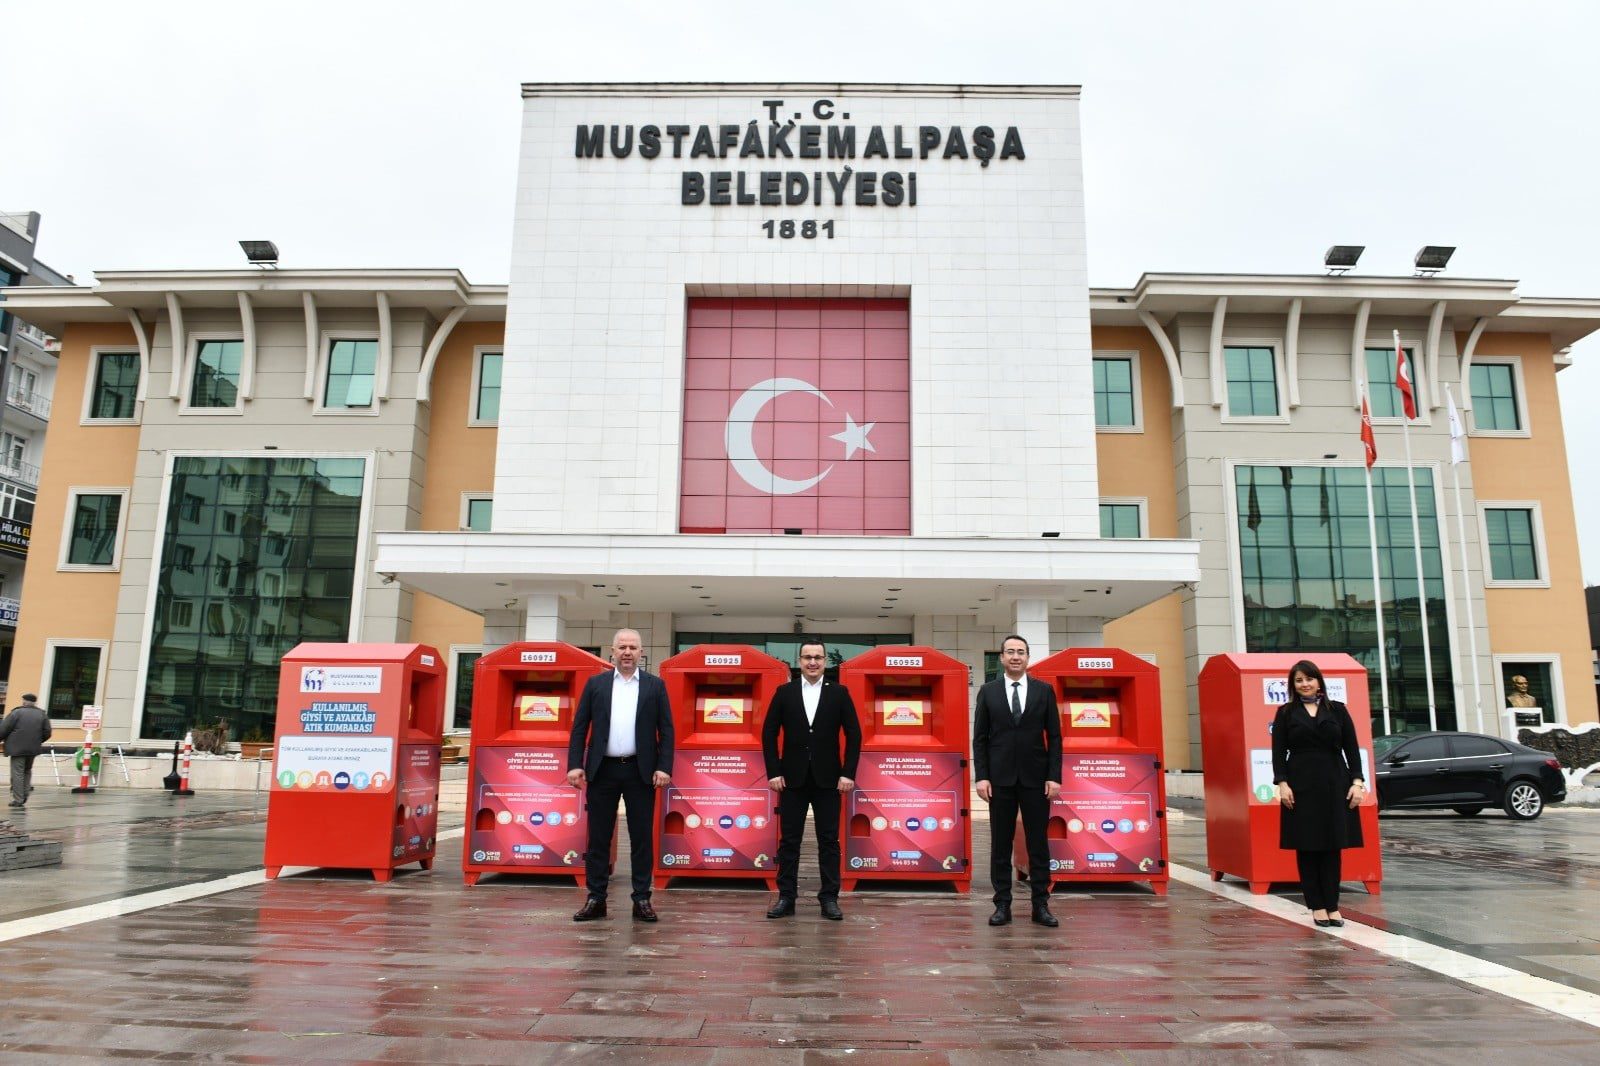 Bursa Mustafakemalpaşa'da giysiler çöpe değil kumbaraya atılıyor